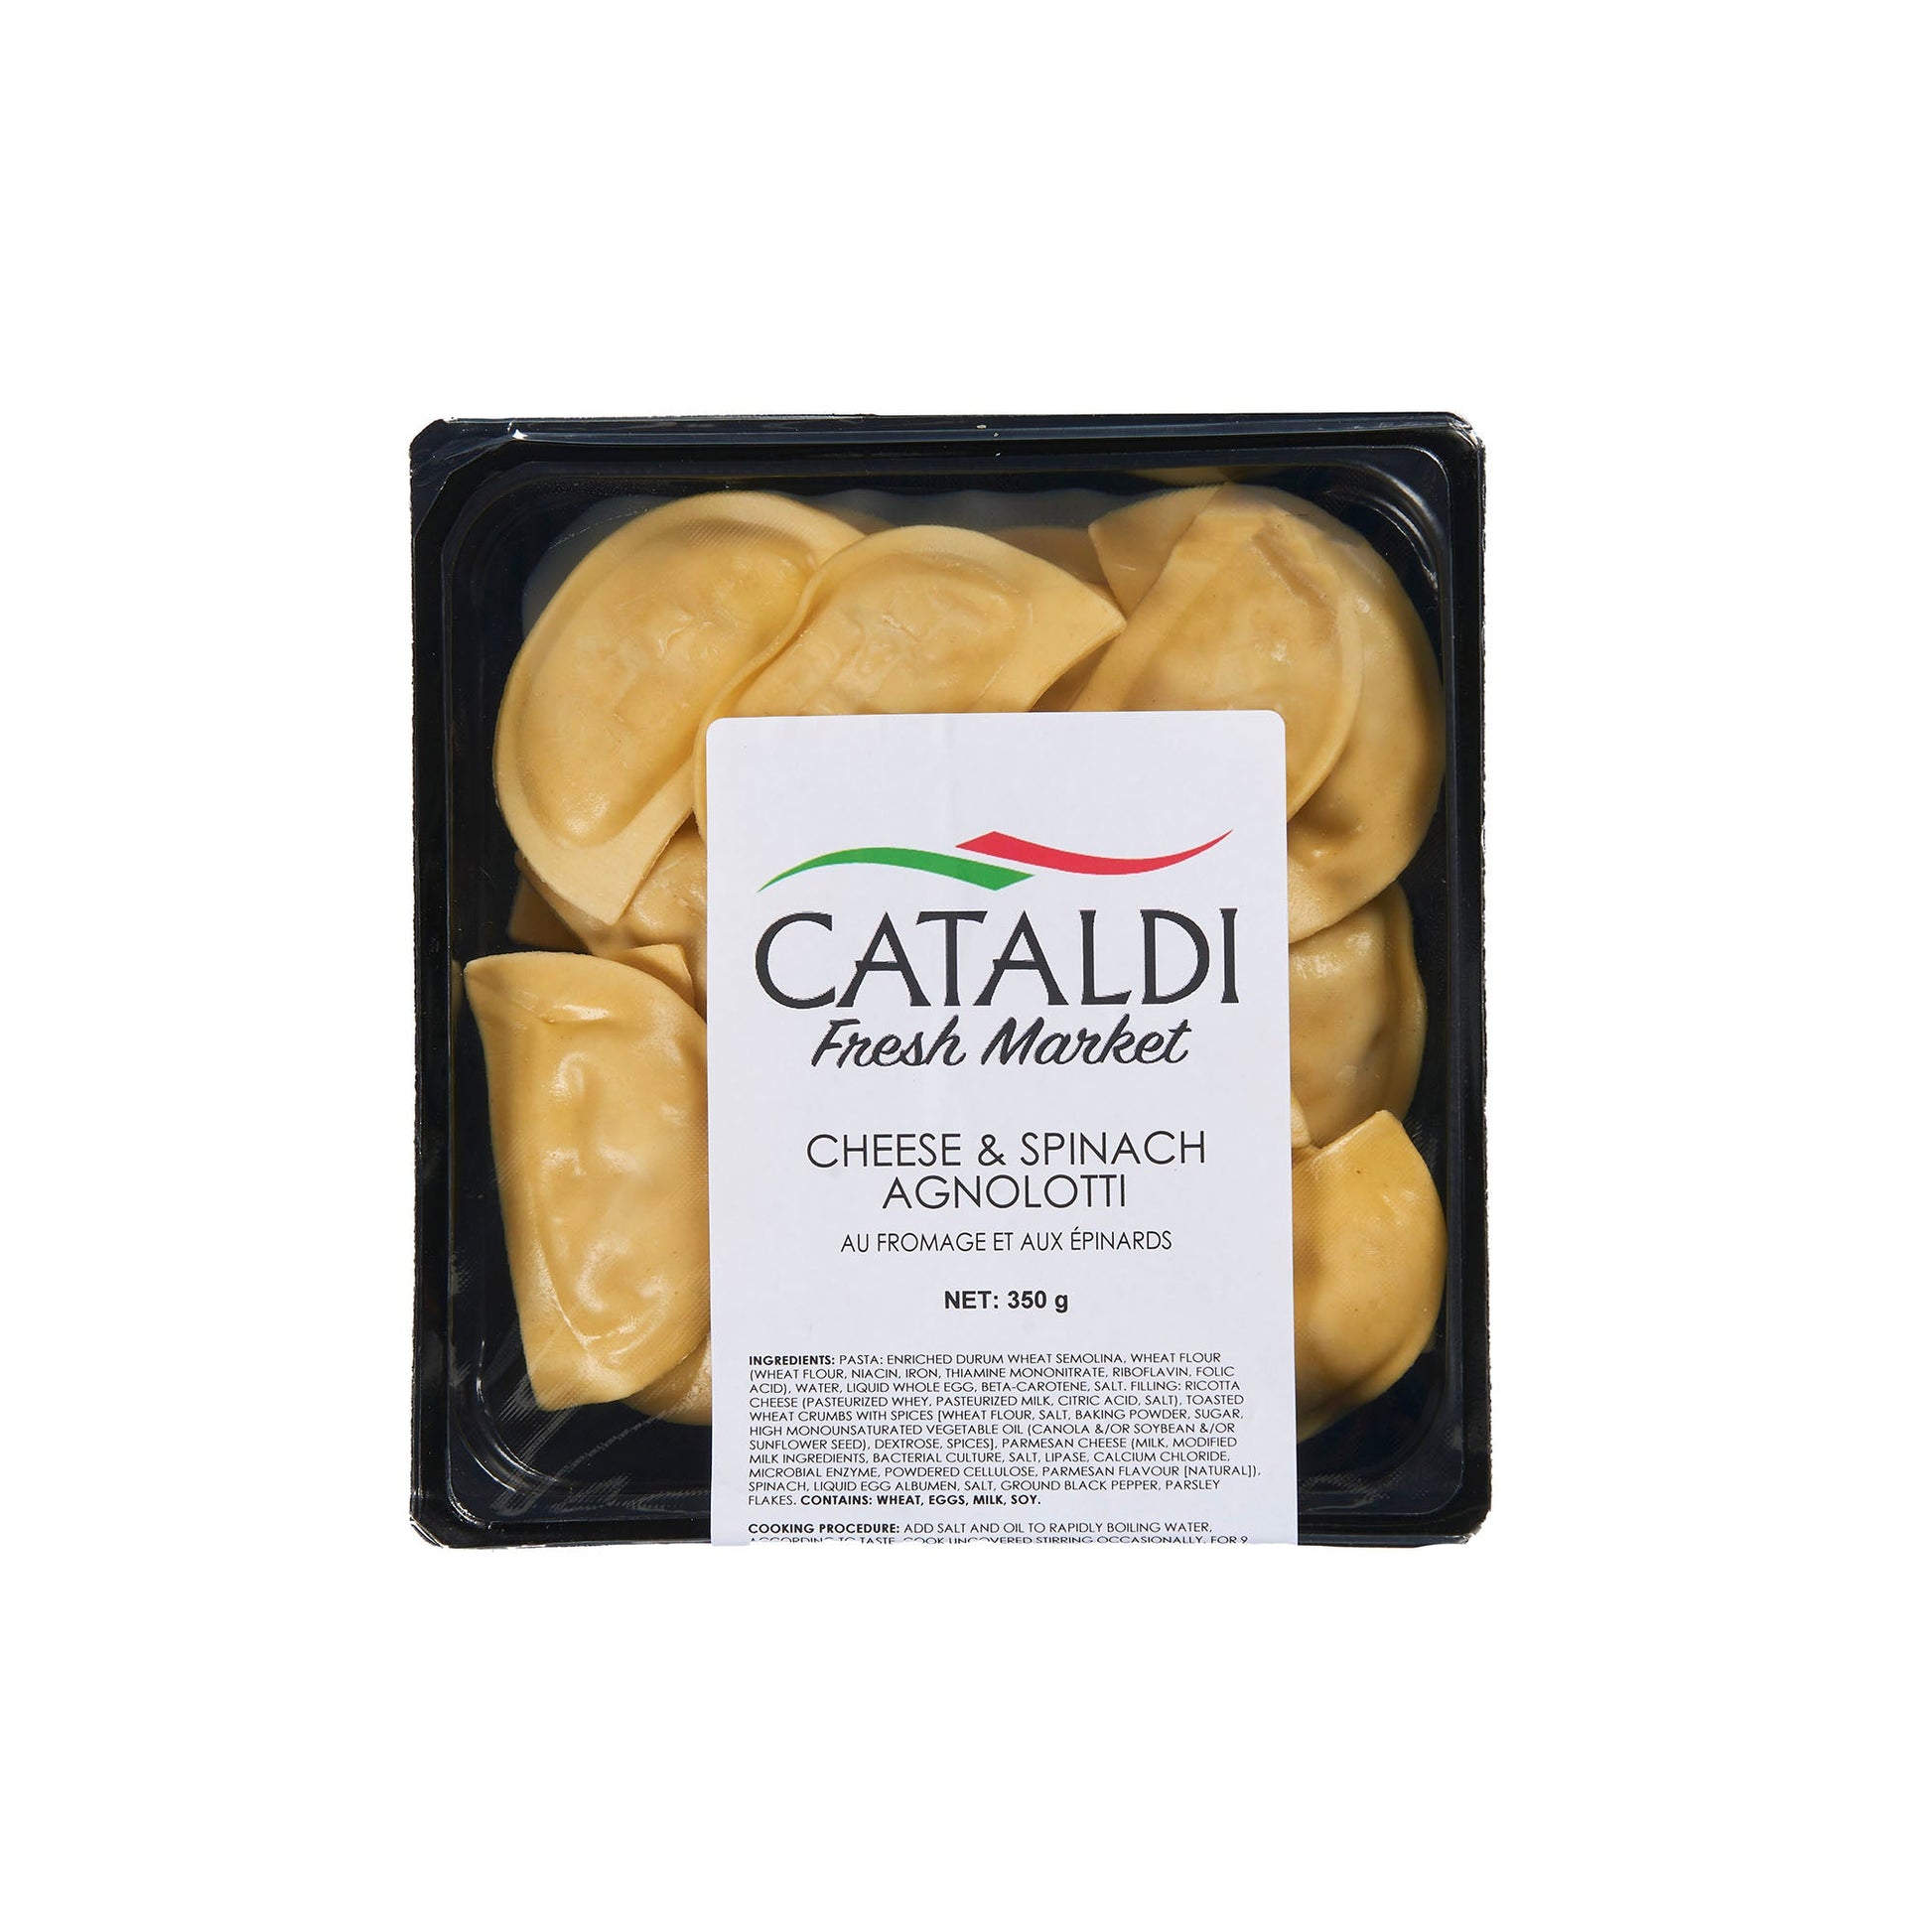 Cataldi Cheese and Spinach Agnolotti 350g